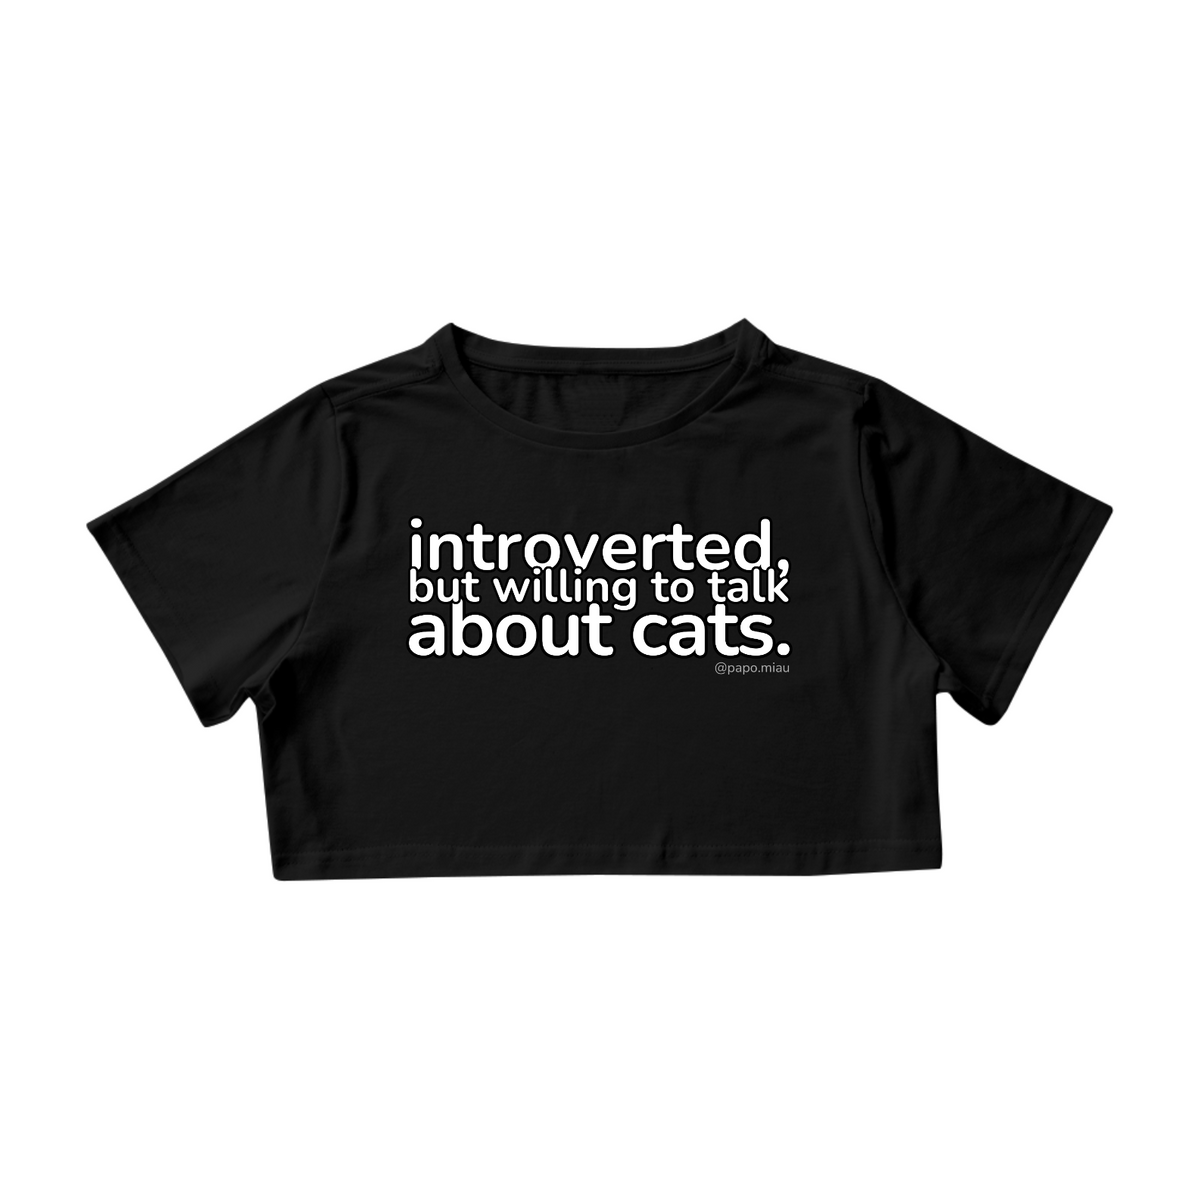 Nome do produto: Cropped -  gateira introvertida